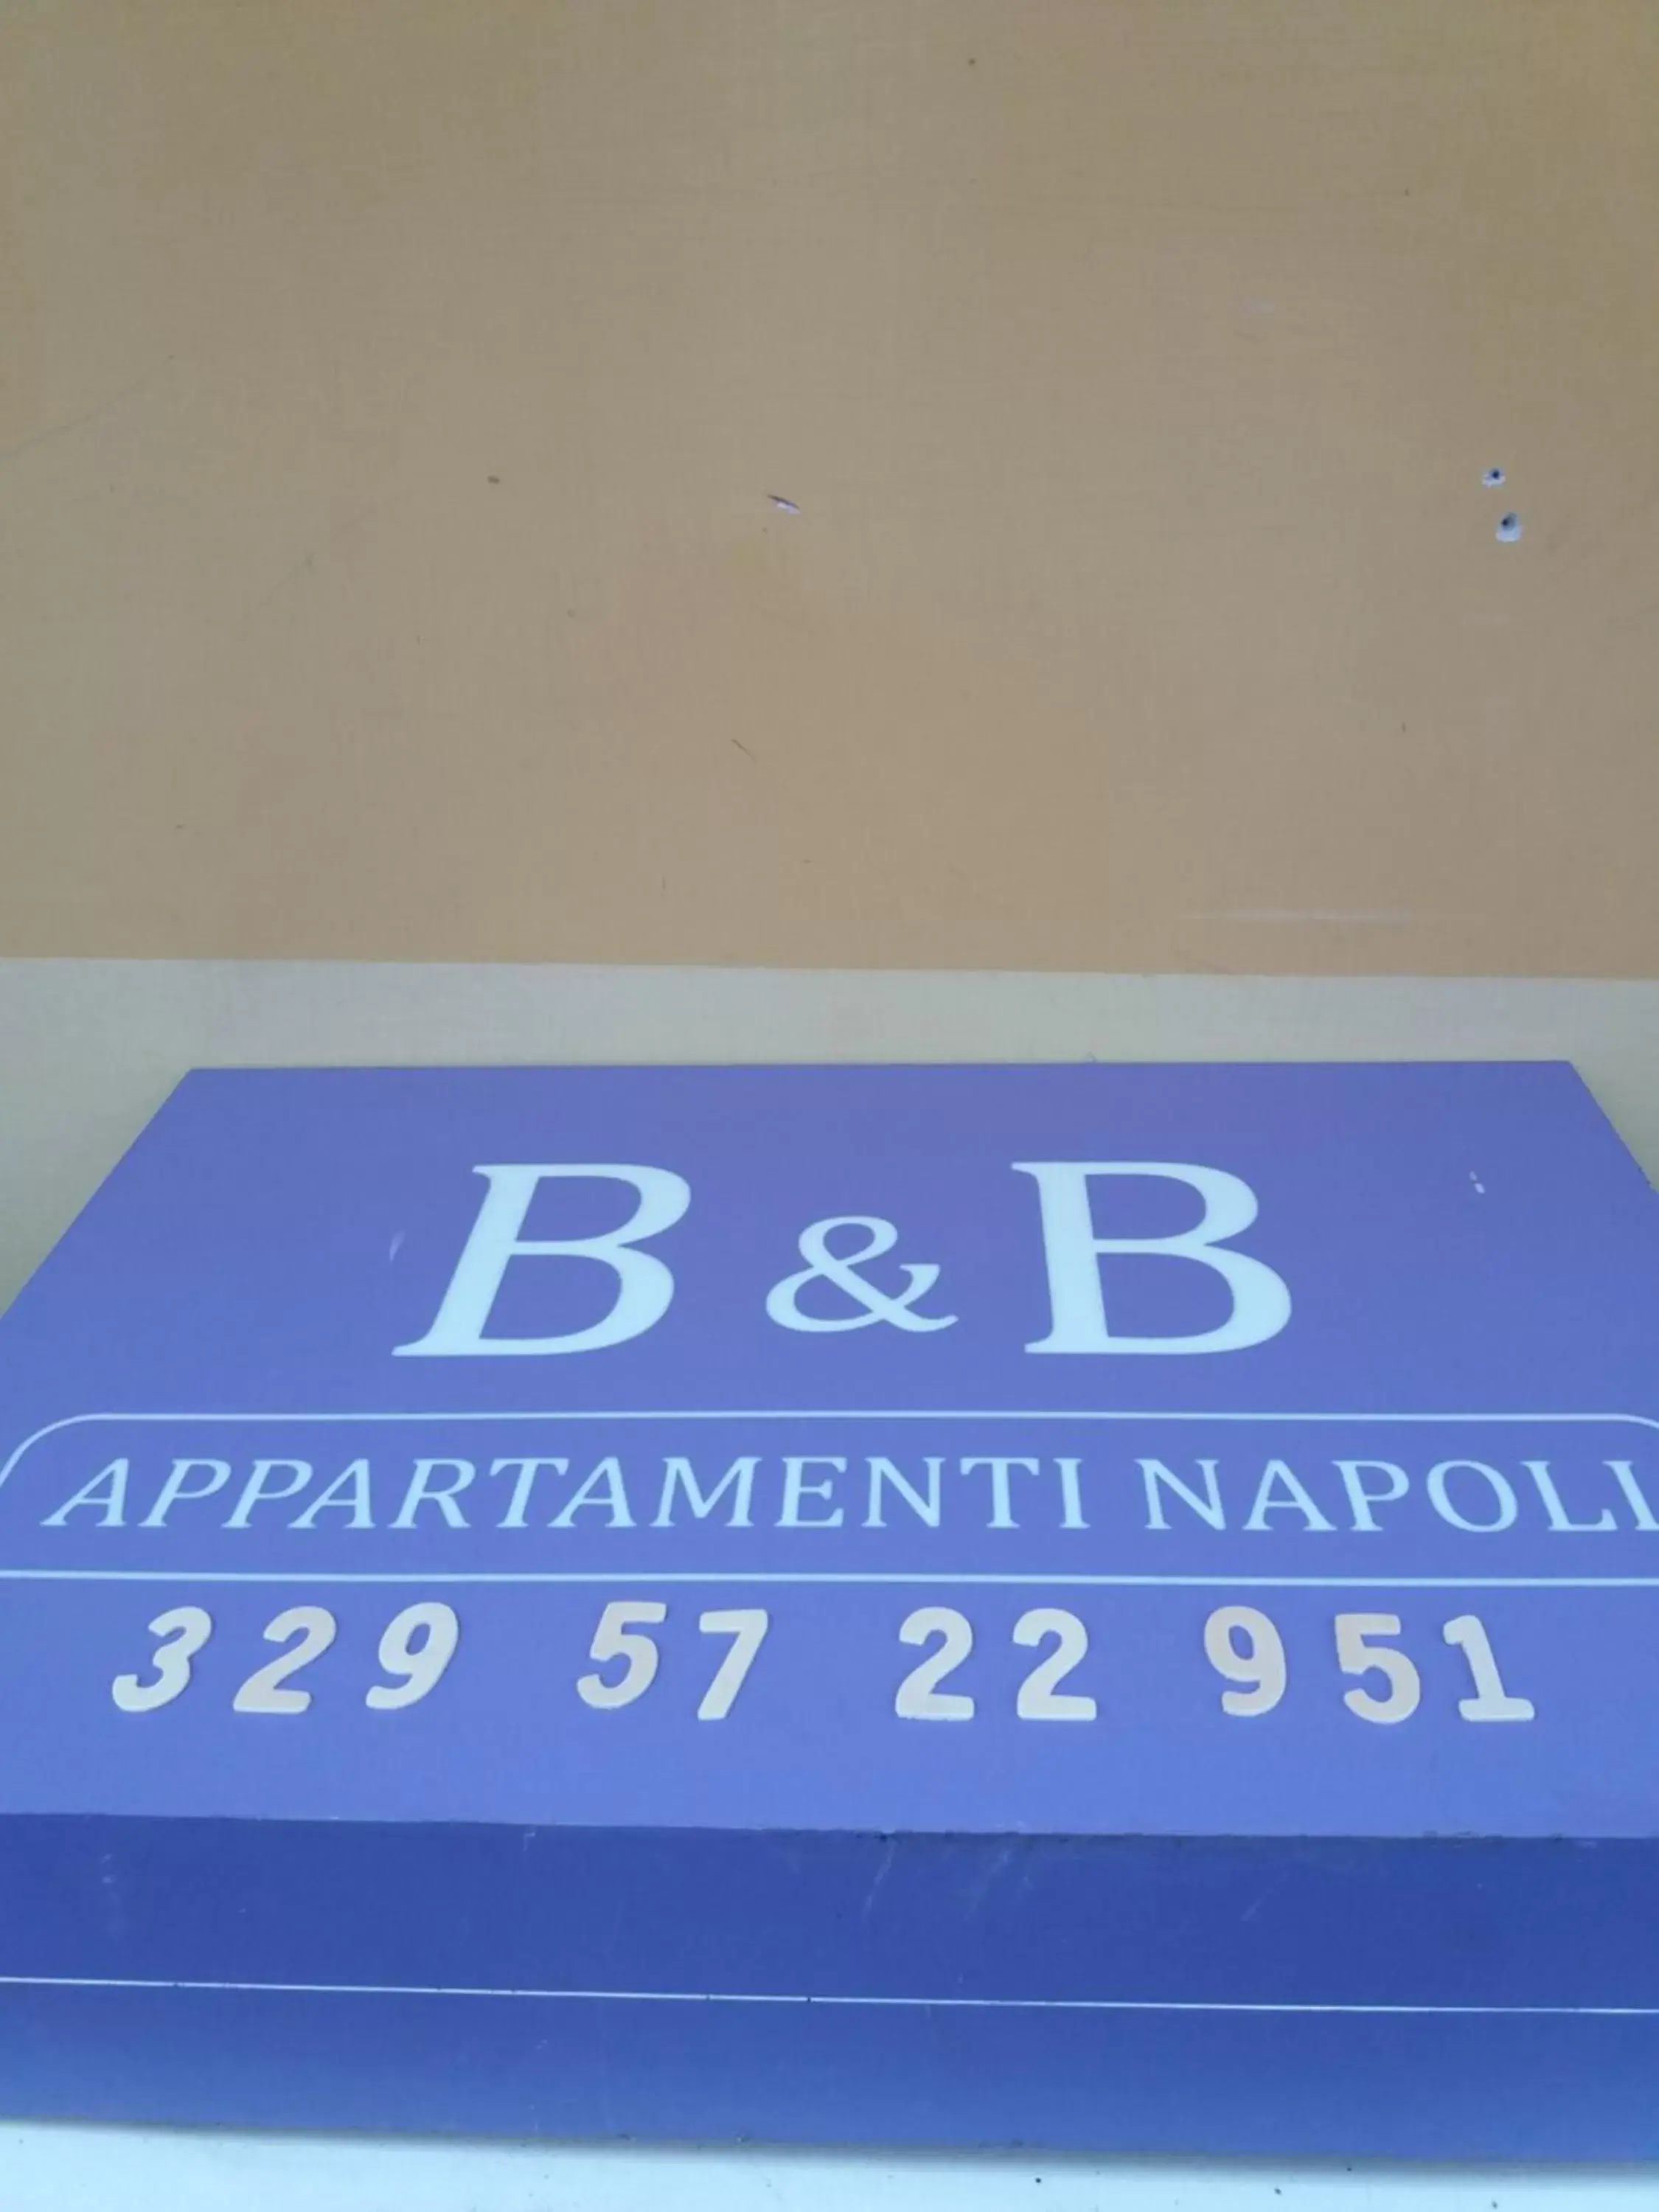 Property logo or sign in B&B Appartamenti Napoli